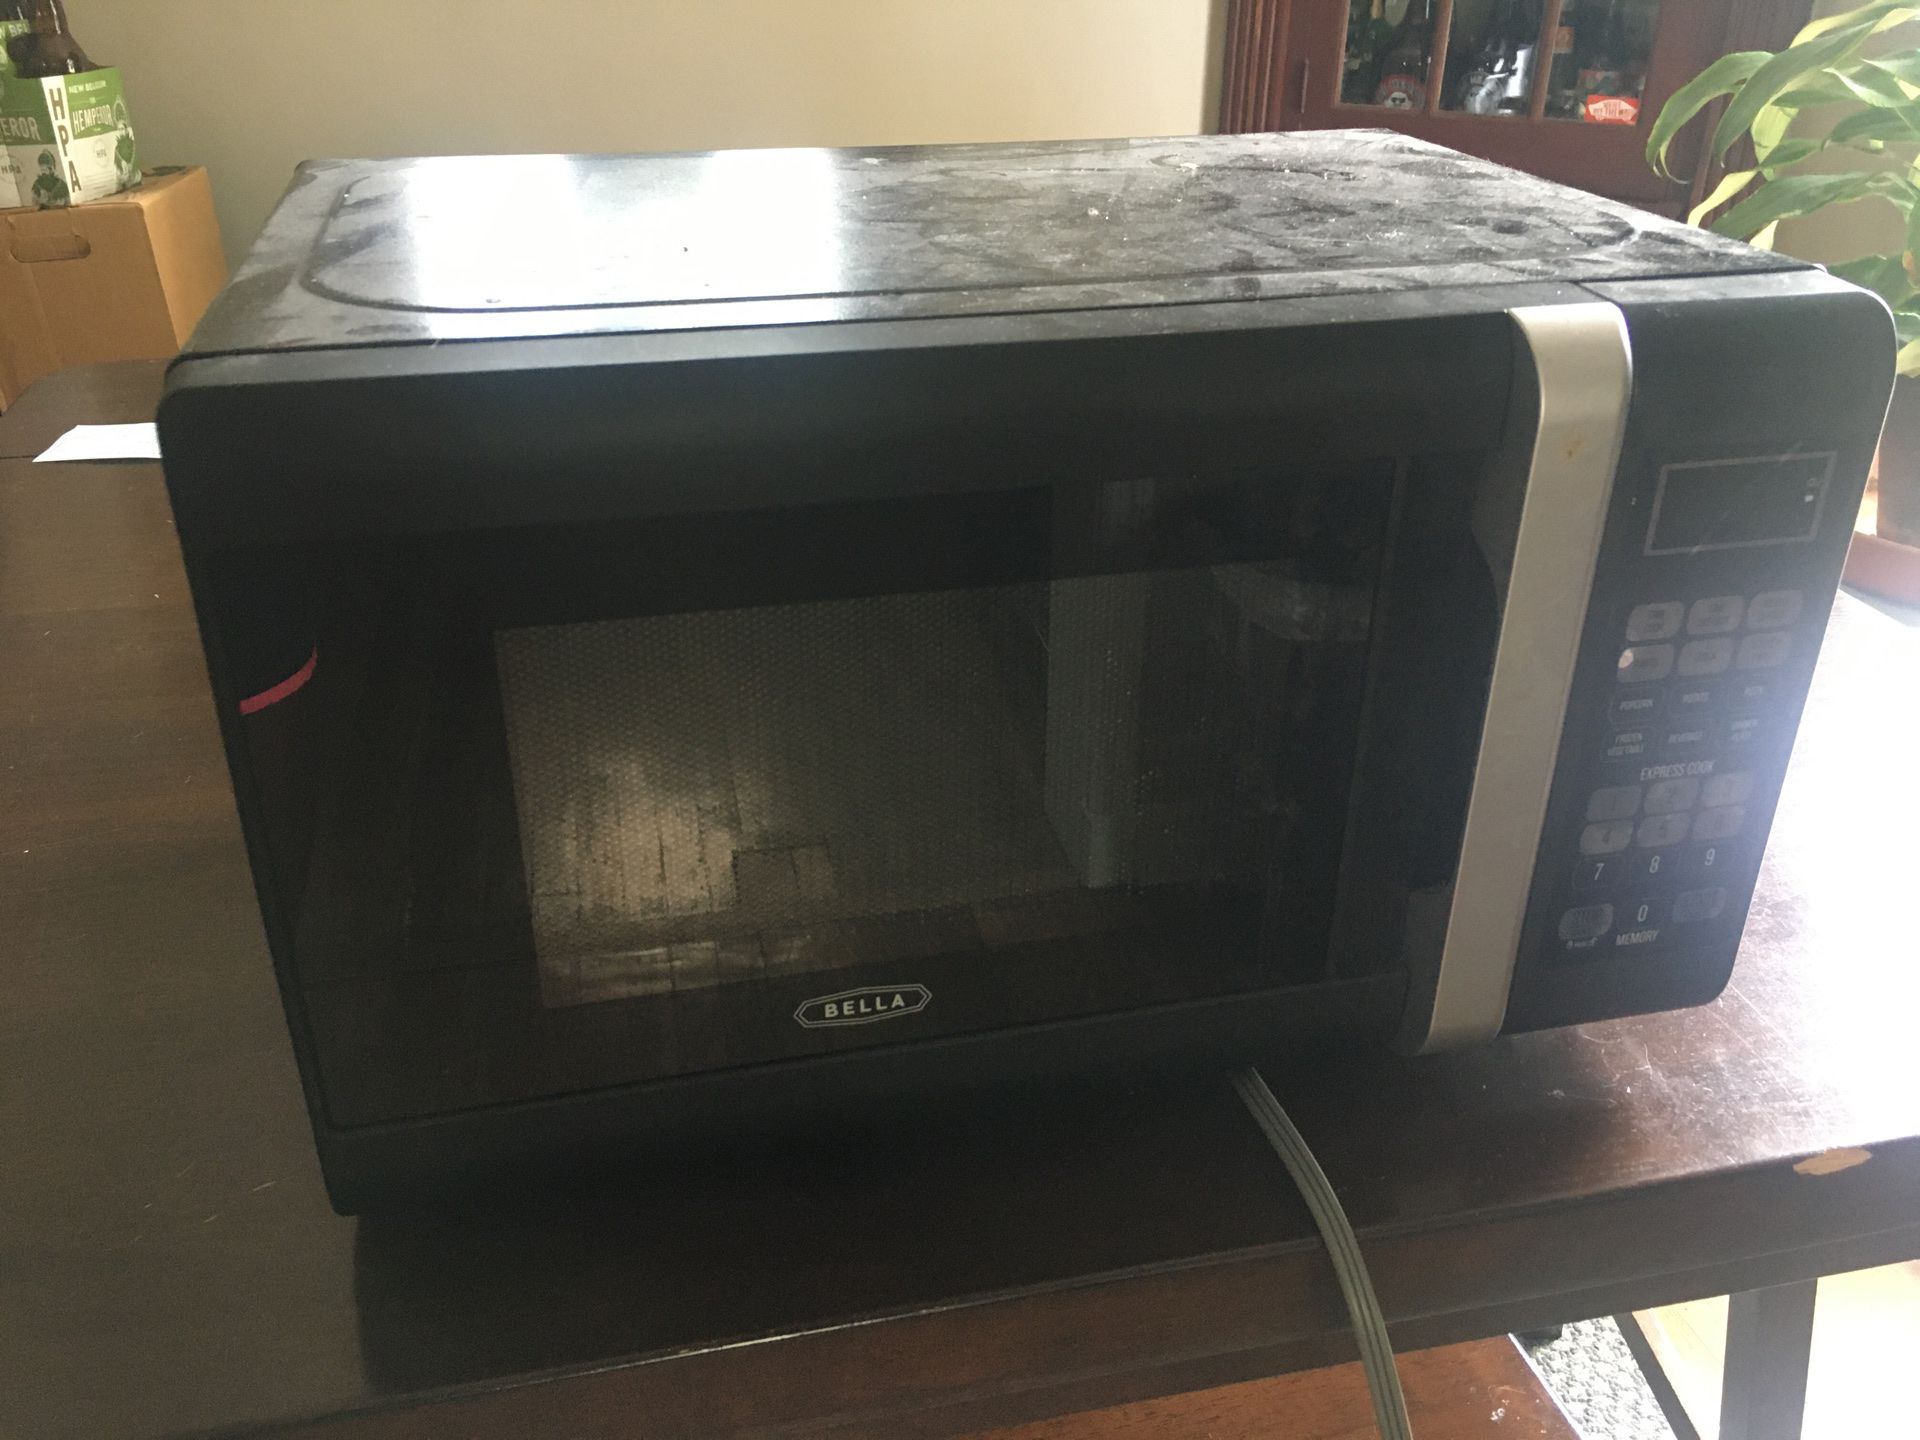 Bella microwave